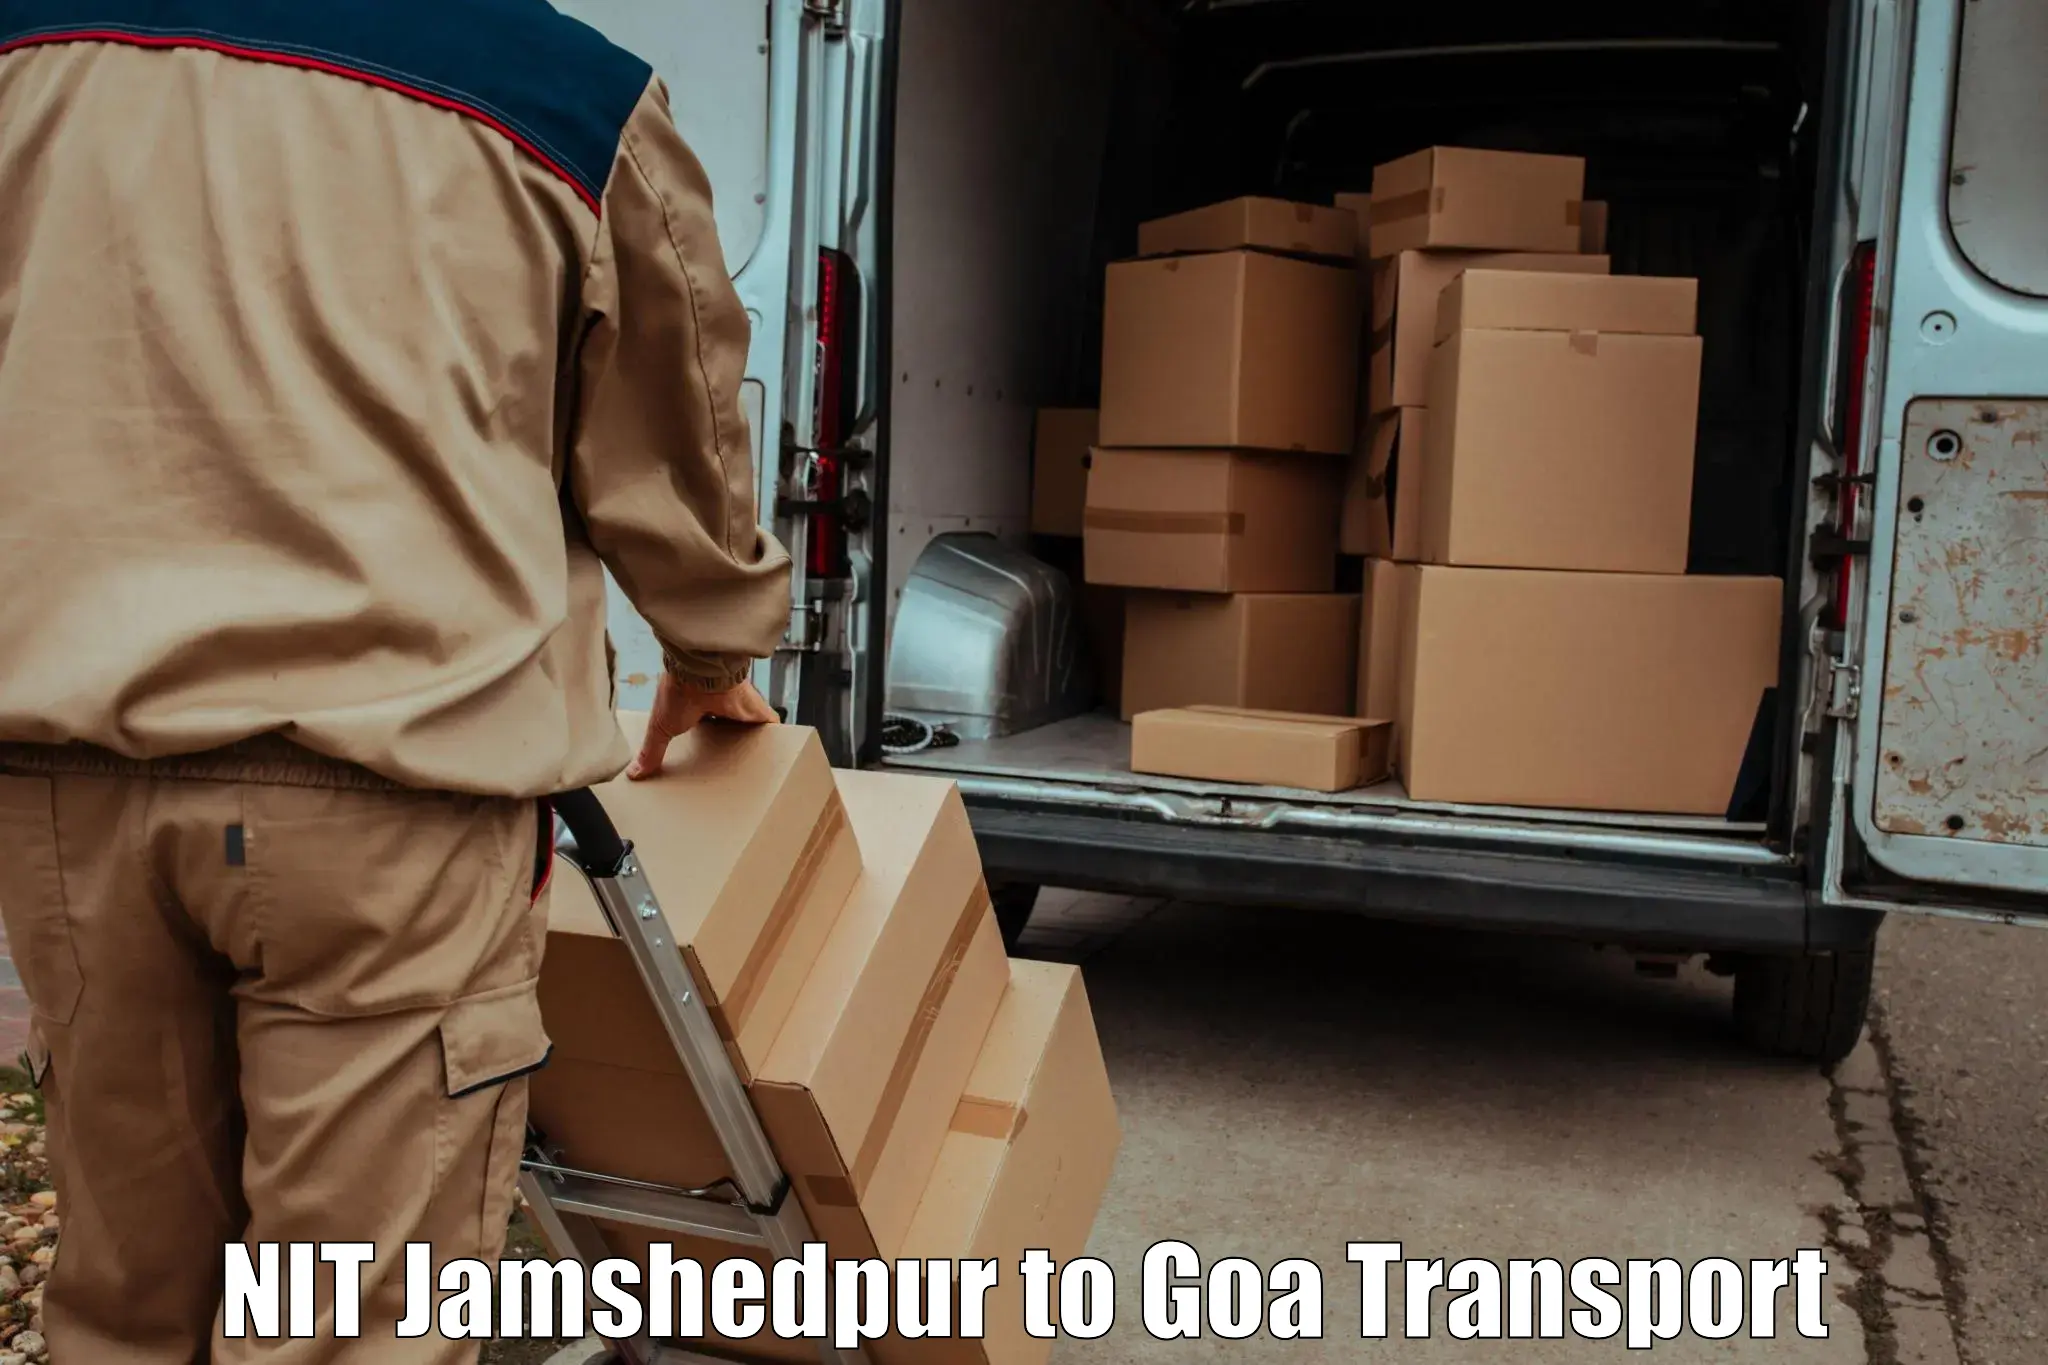 Parcel transport services NIT Jamshedpur to Mormugao Port